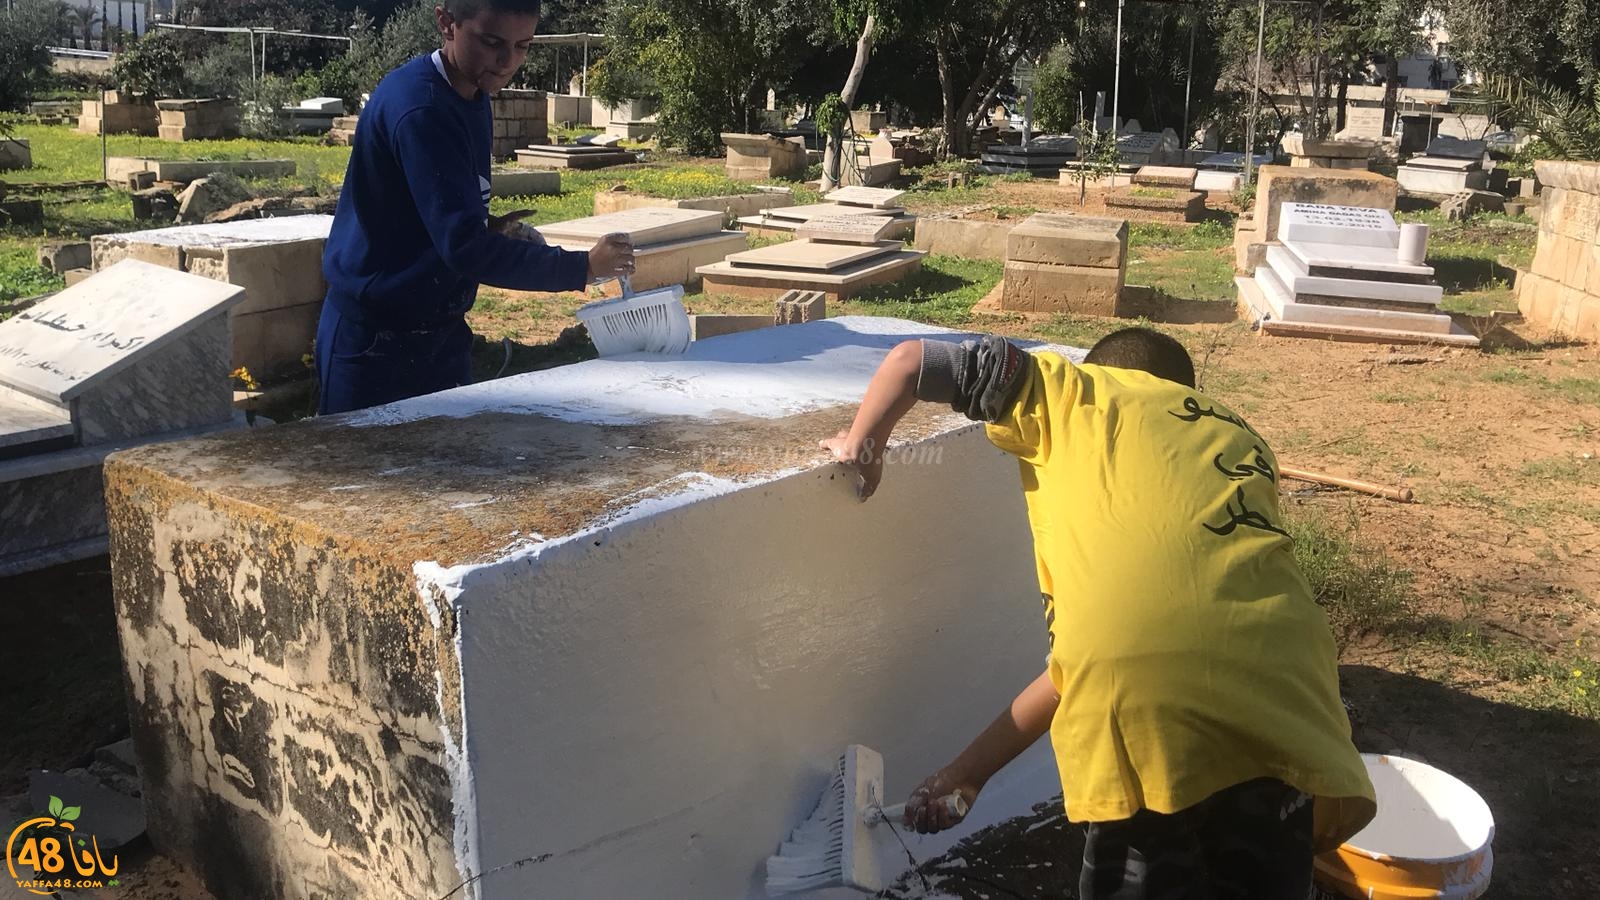  فيديو: جملة مشاريع في مقبرة طاسو - شق طريق واطلاق مشروع لتنظيم الدفن